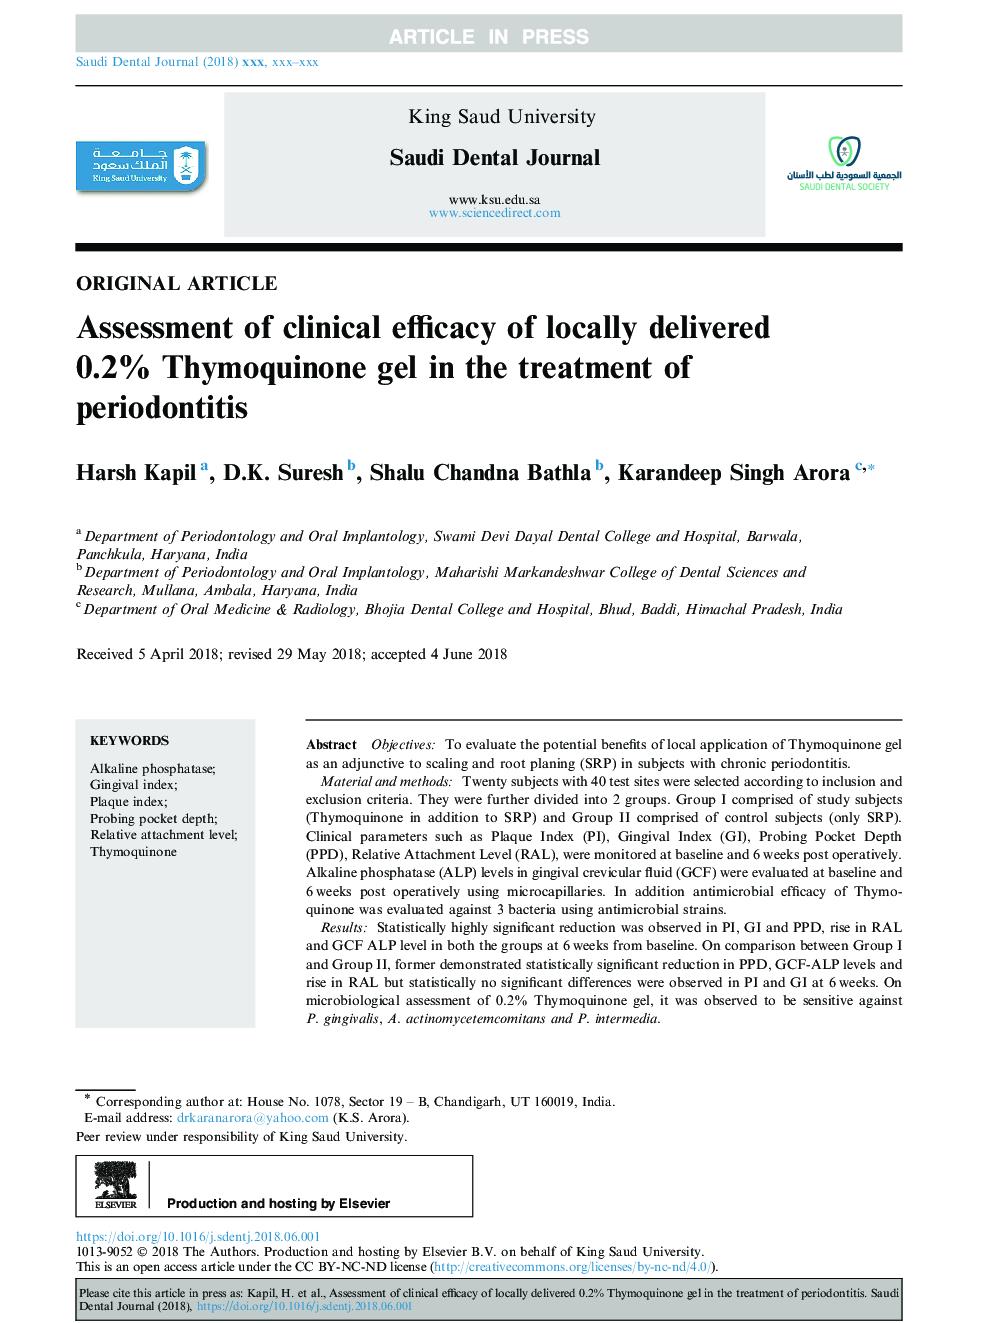 ارزیابی اثربخشی بالینی از لحاظ موضعی 0.2٪ ژن تیموگوینون در درمان پریودنتیت